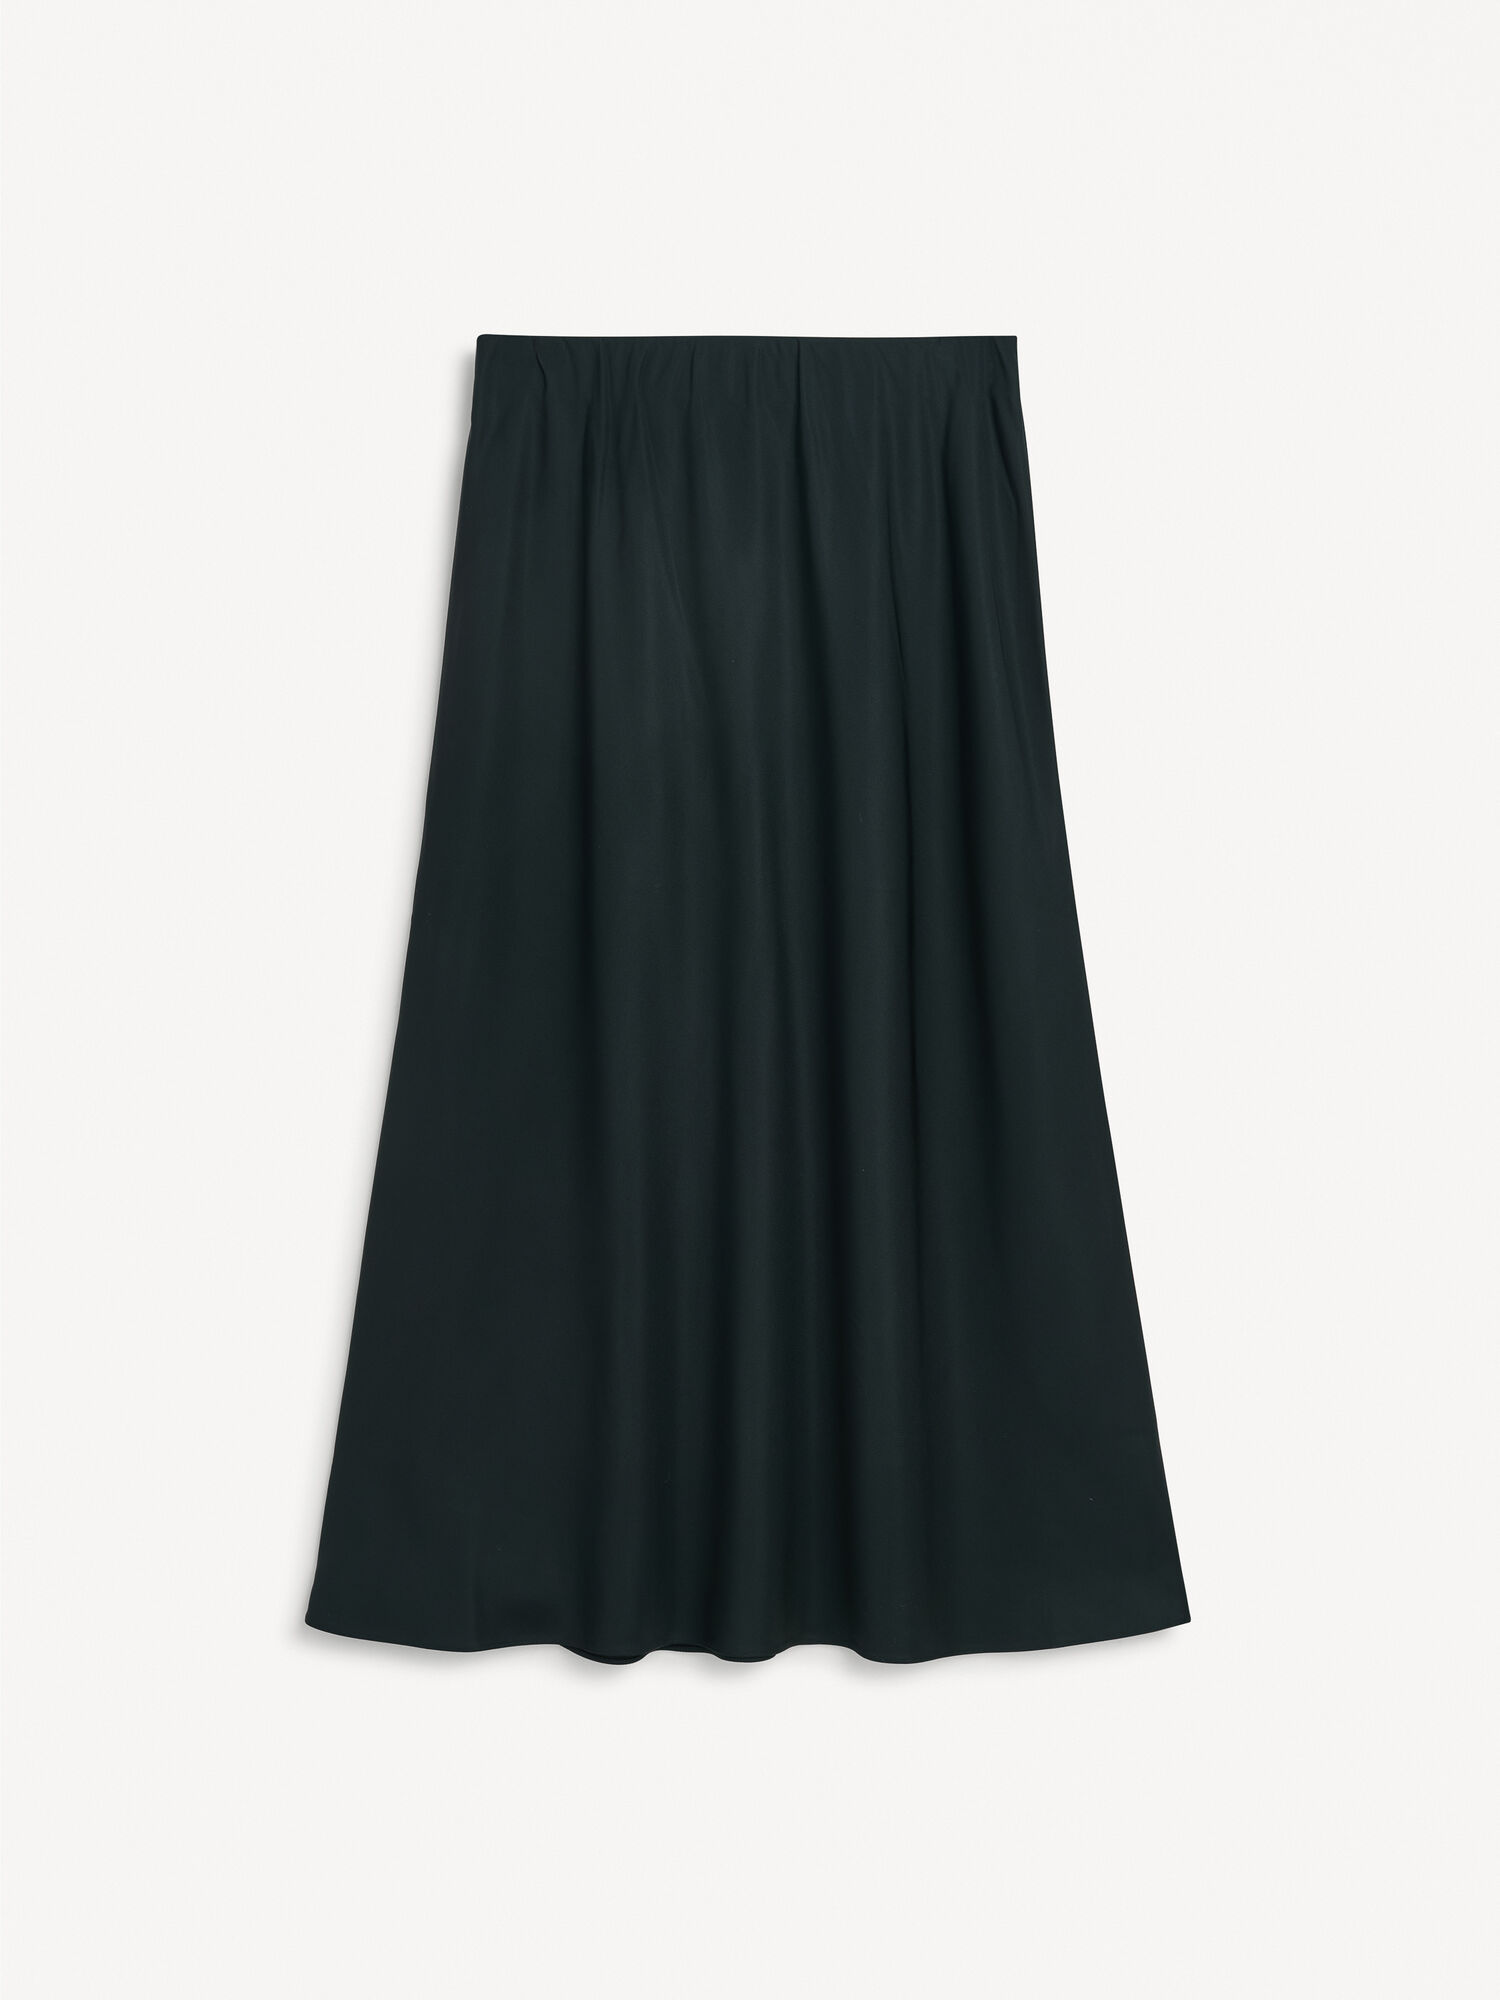 Boshan maxi skirt